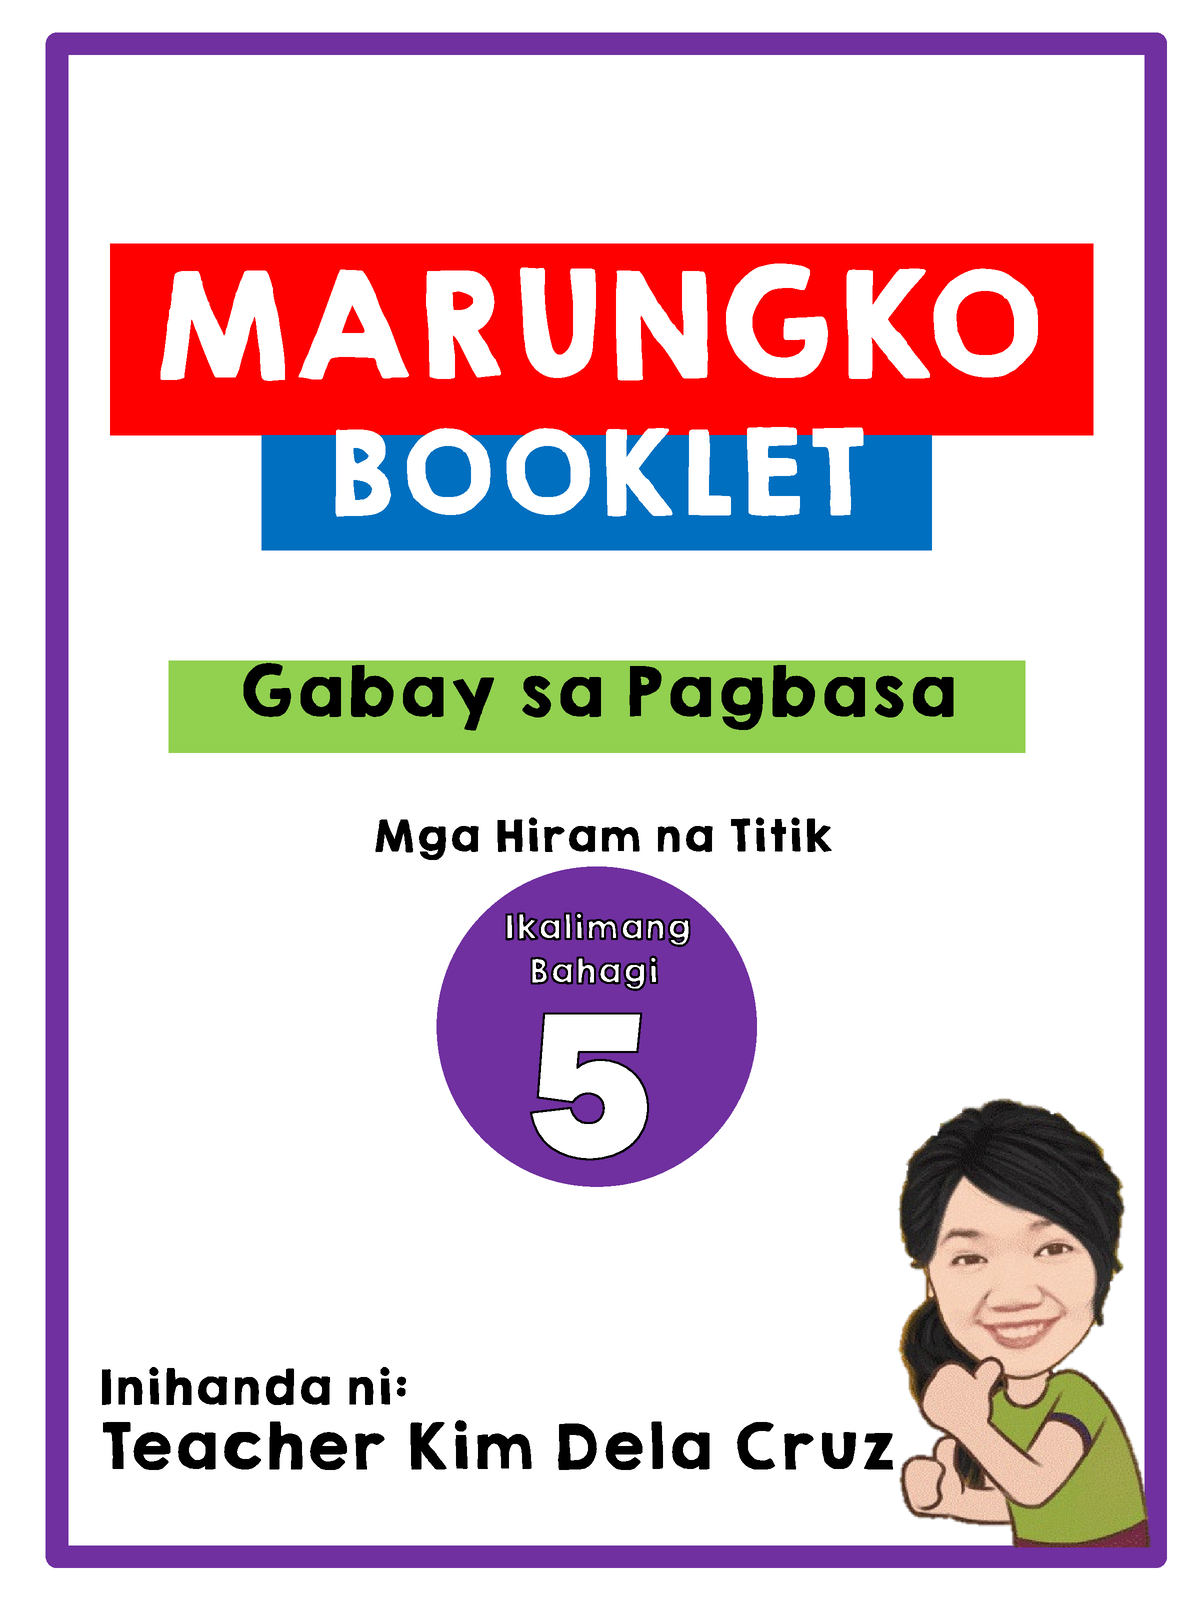 Marungko Booklet 5 (Mga Hiram na Titik) - MARUNGKO BOOKLET Gabay sa ...